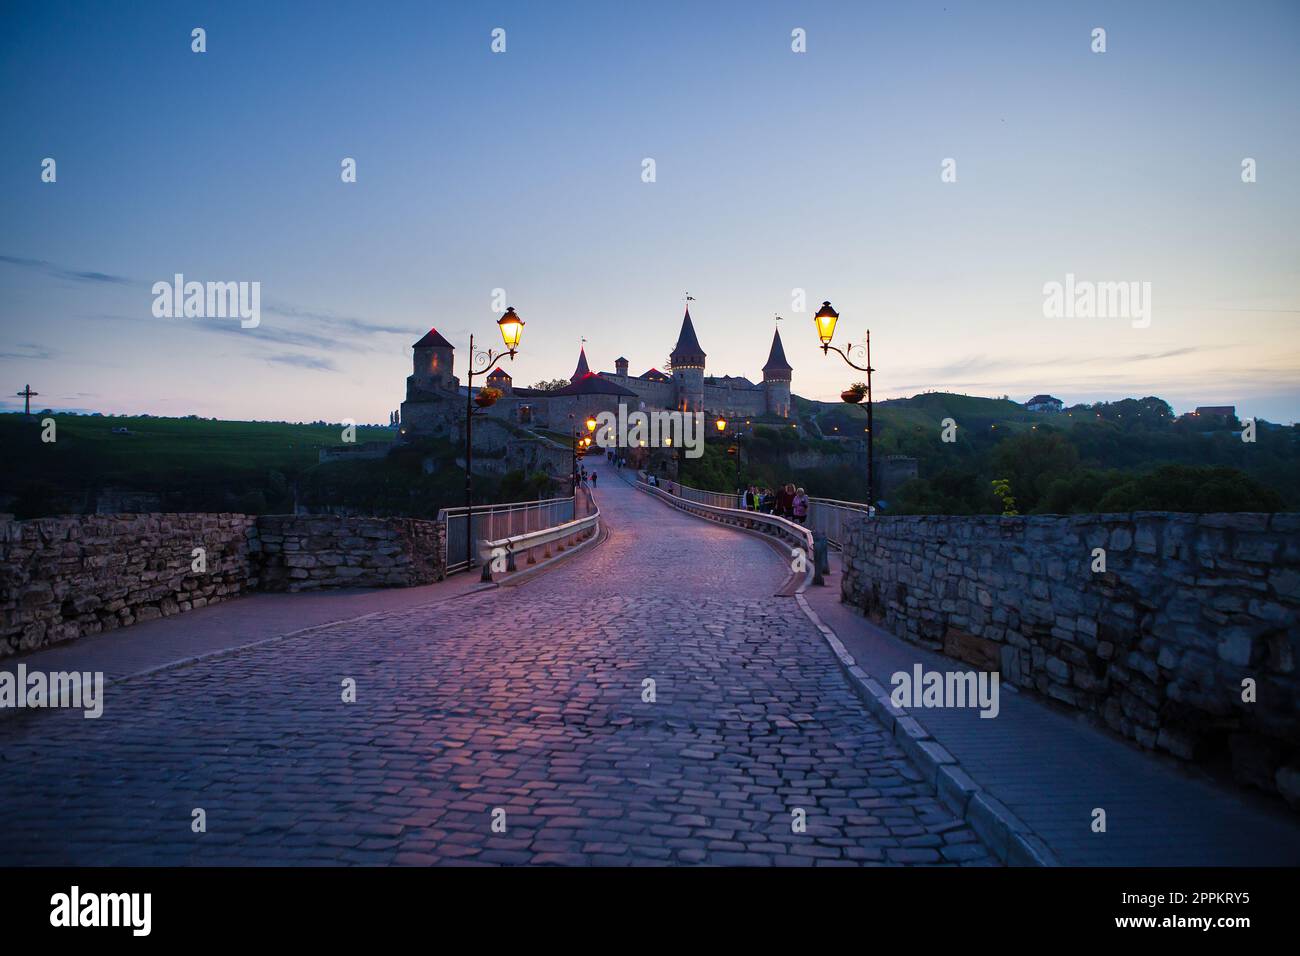 Kamianets-Podilskyi est une ville romantique, une belle vue sur la ville du soir, des lanternes illuminent le pont. Une vue estivale pittoresque de l'ancien château-forteresse à Kamianets-Podilskyi, région de Khmelnytskyi, Ukraine. Banque D'Images